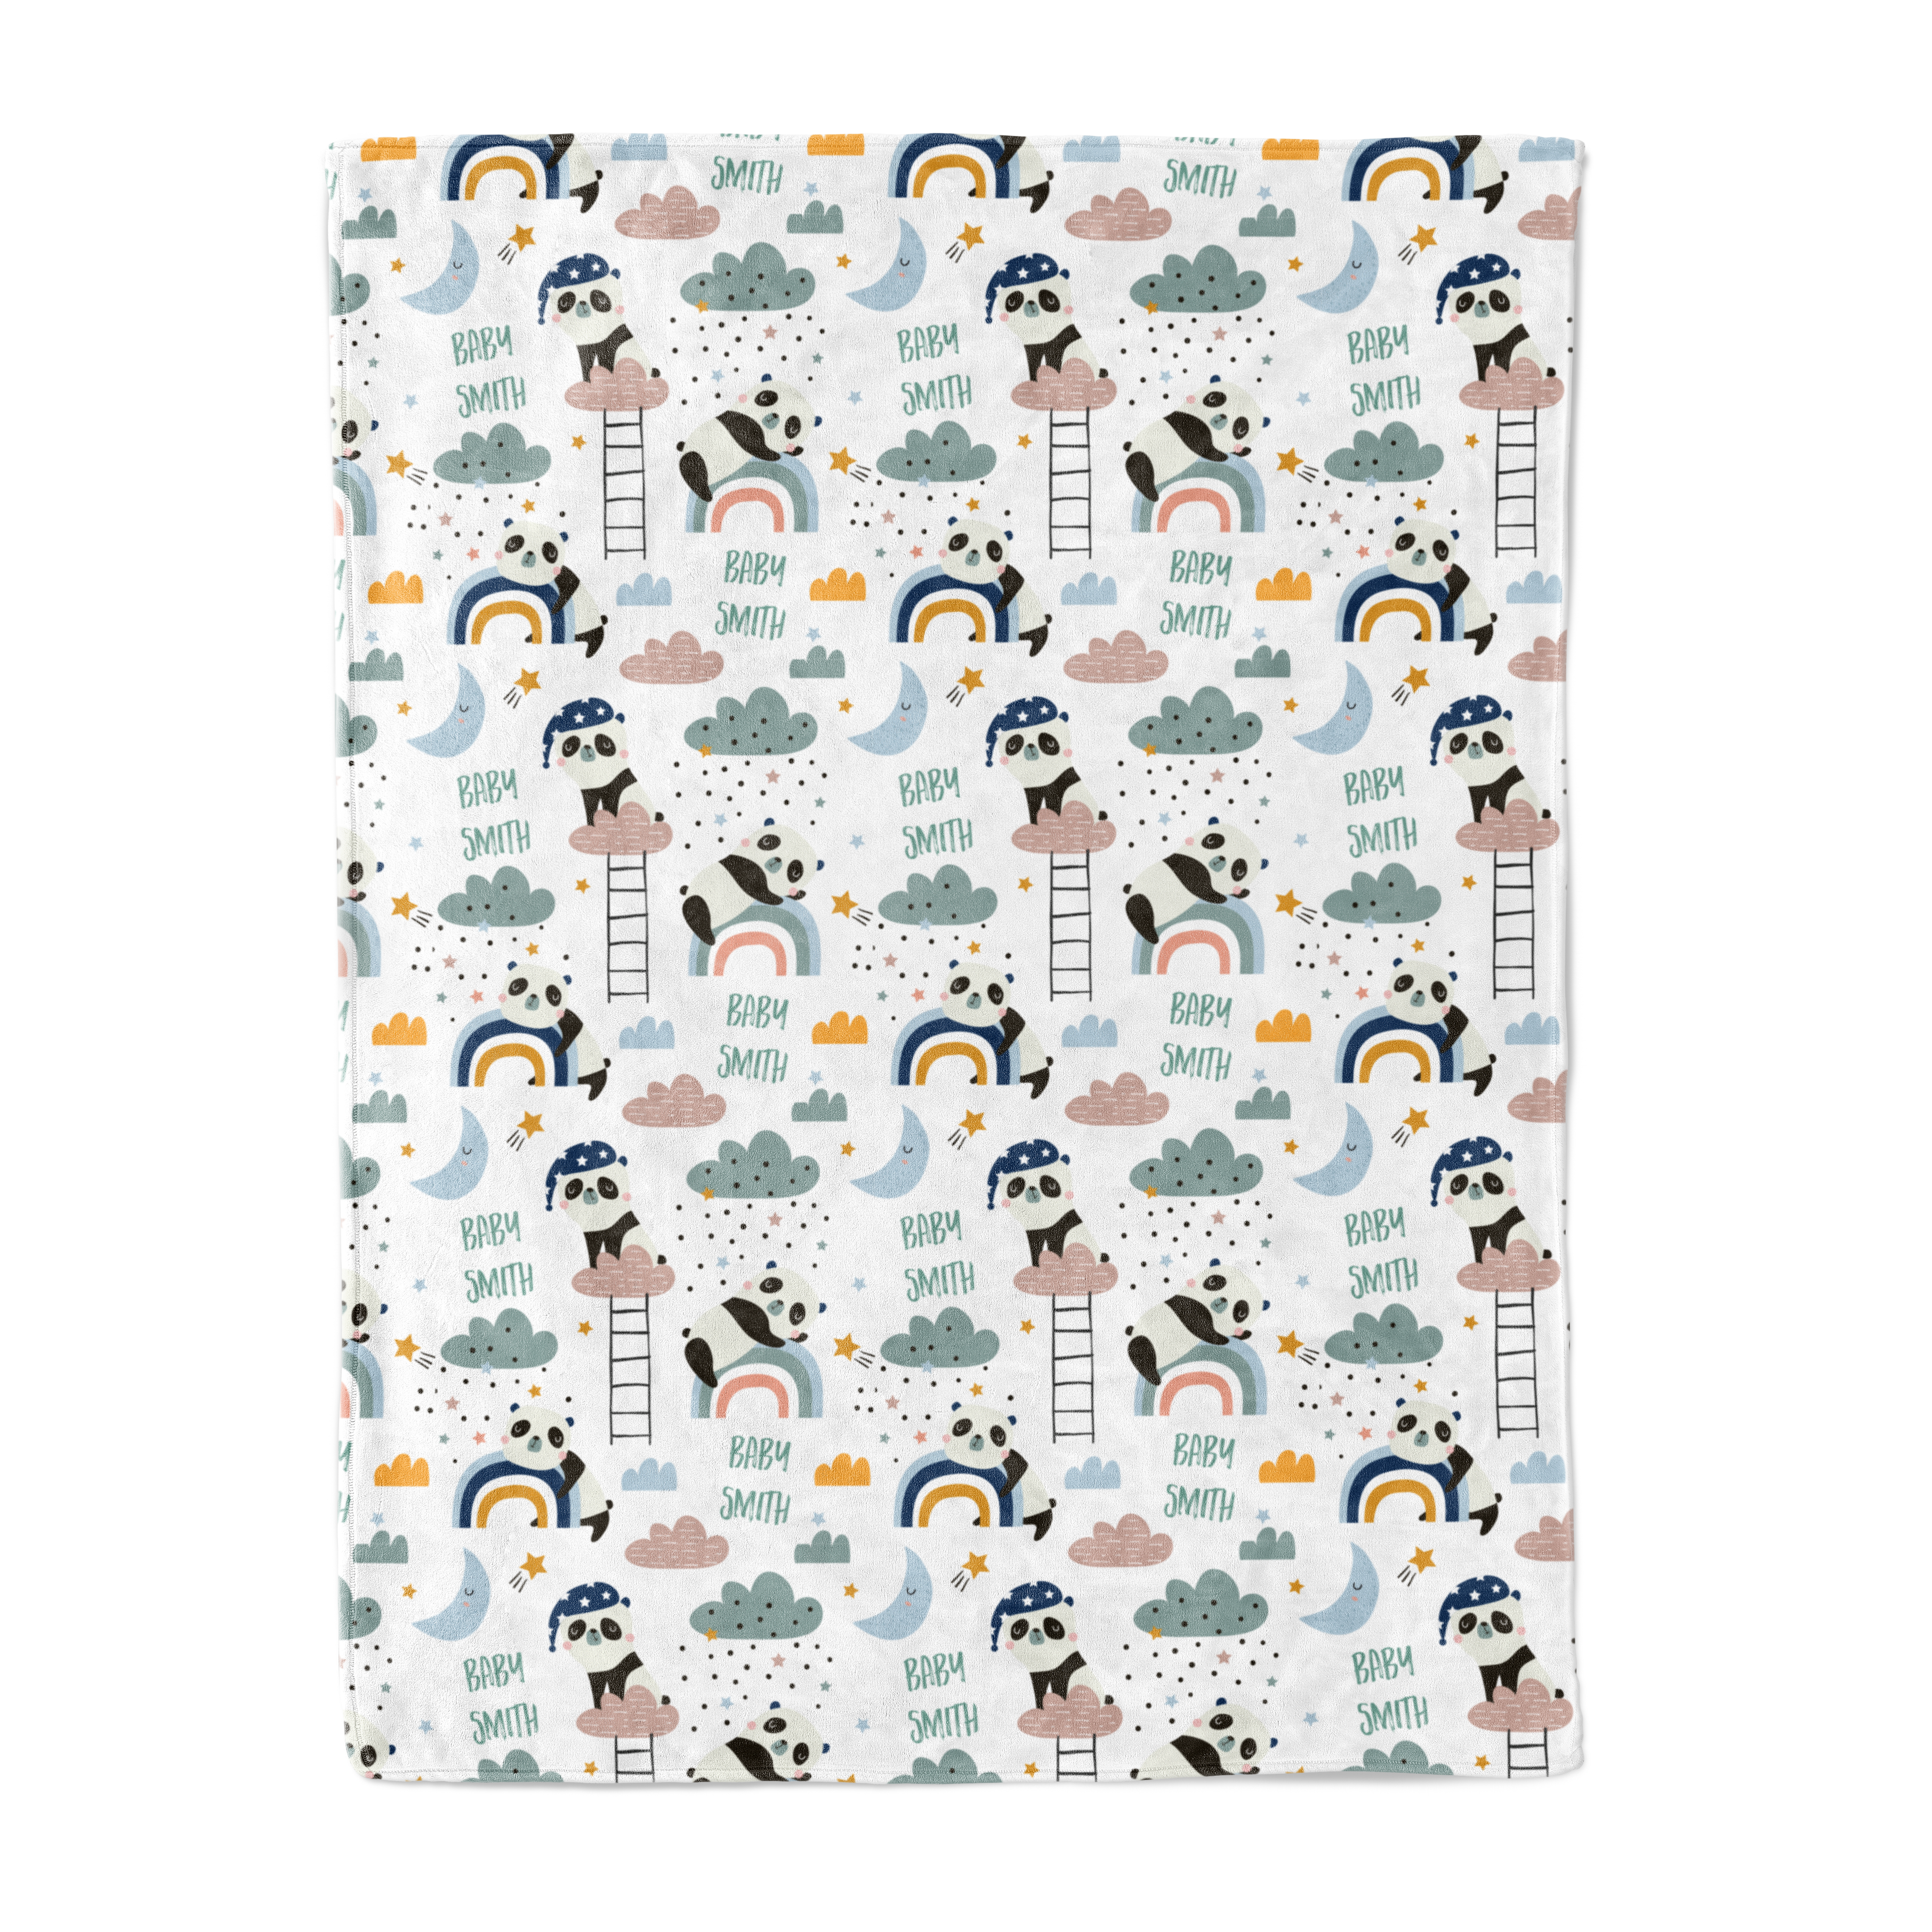 Sleepy Panda - Personalised Keepsake Blanket